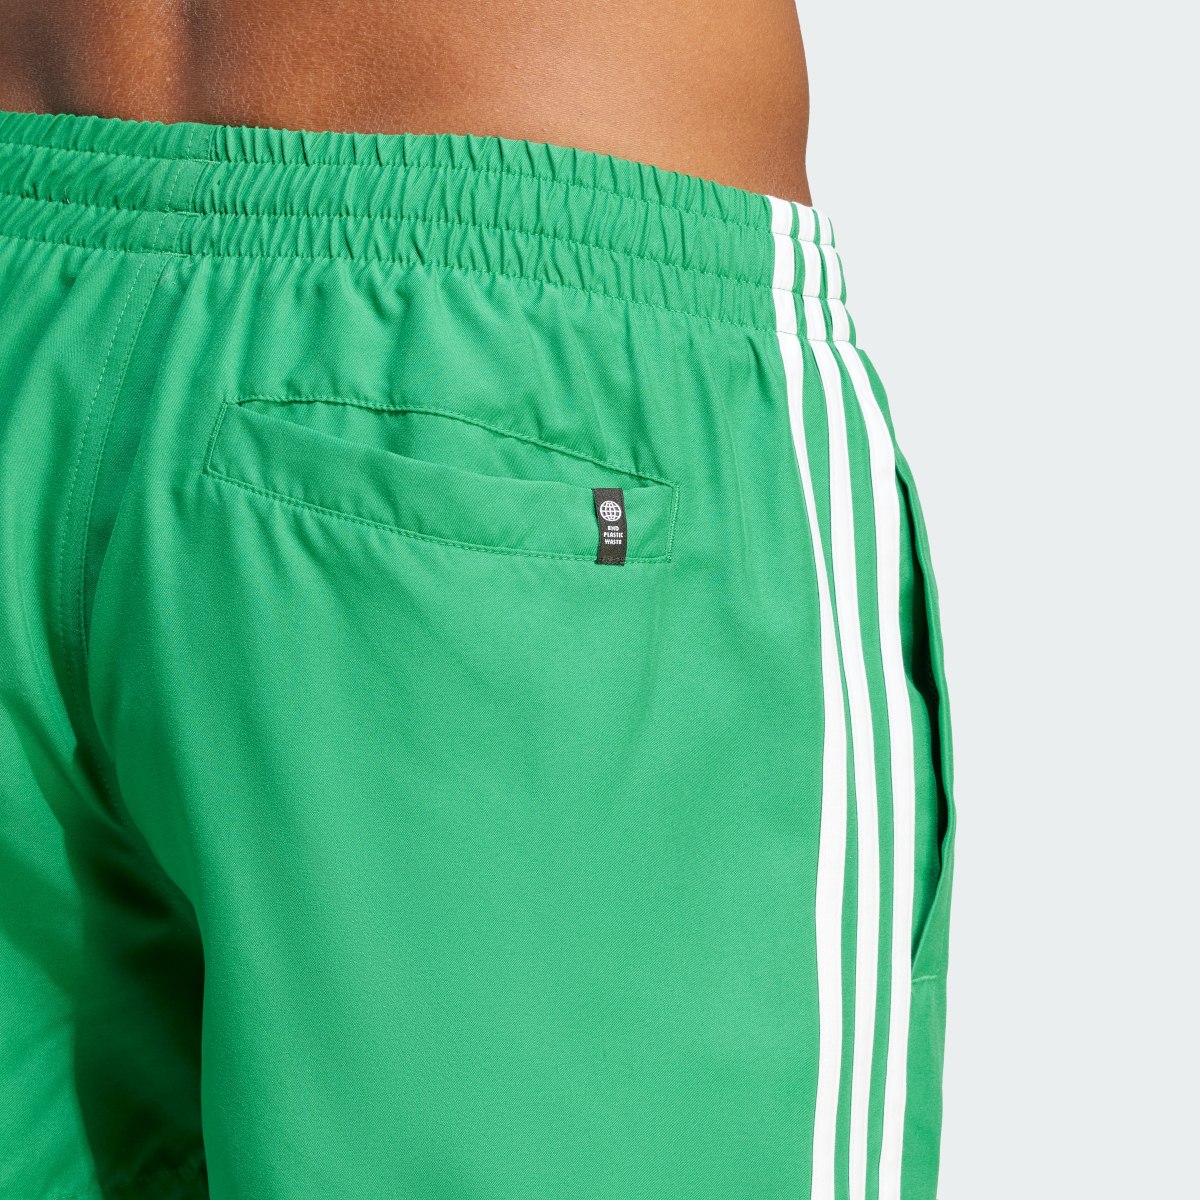 Adidas Originals Adicolor 3-Stripes Short Length Swim Shorts. 6